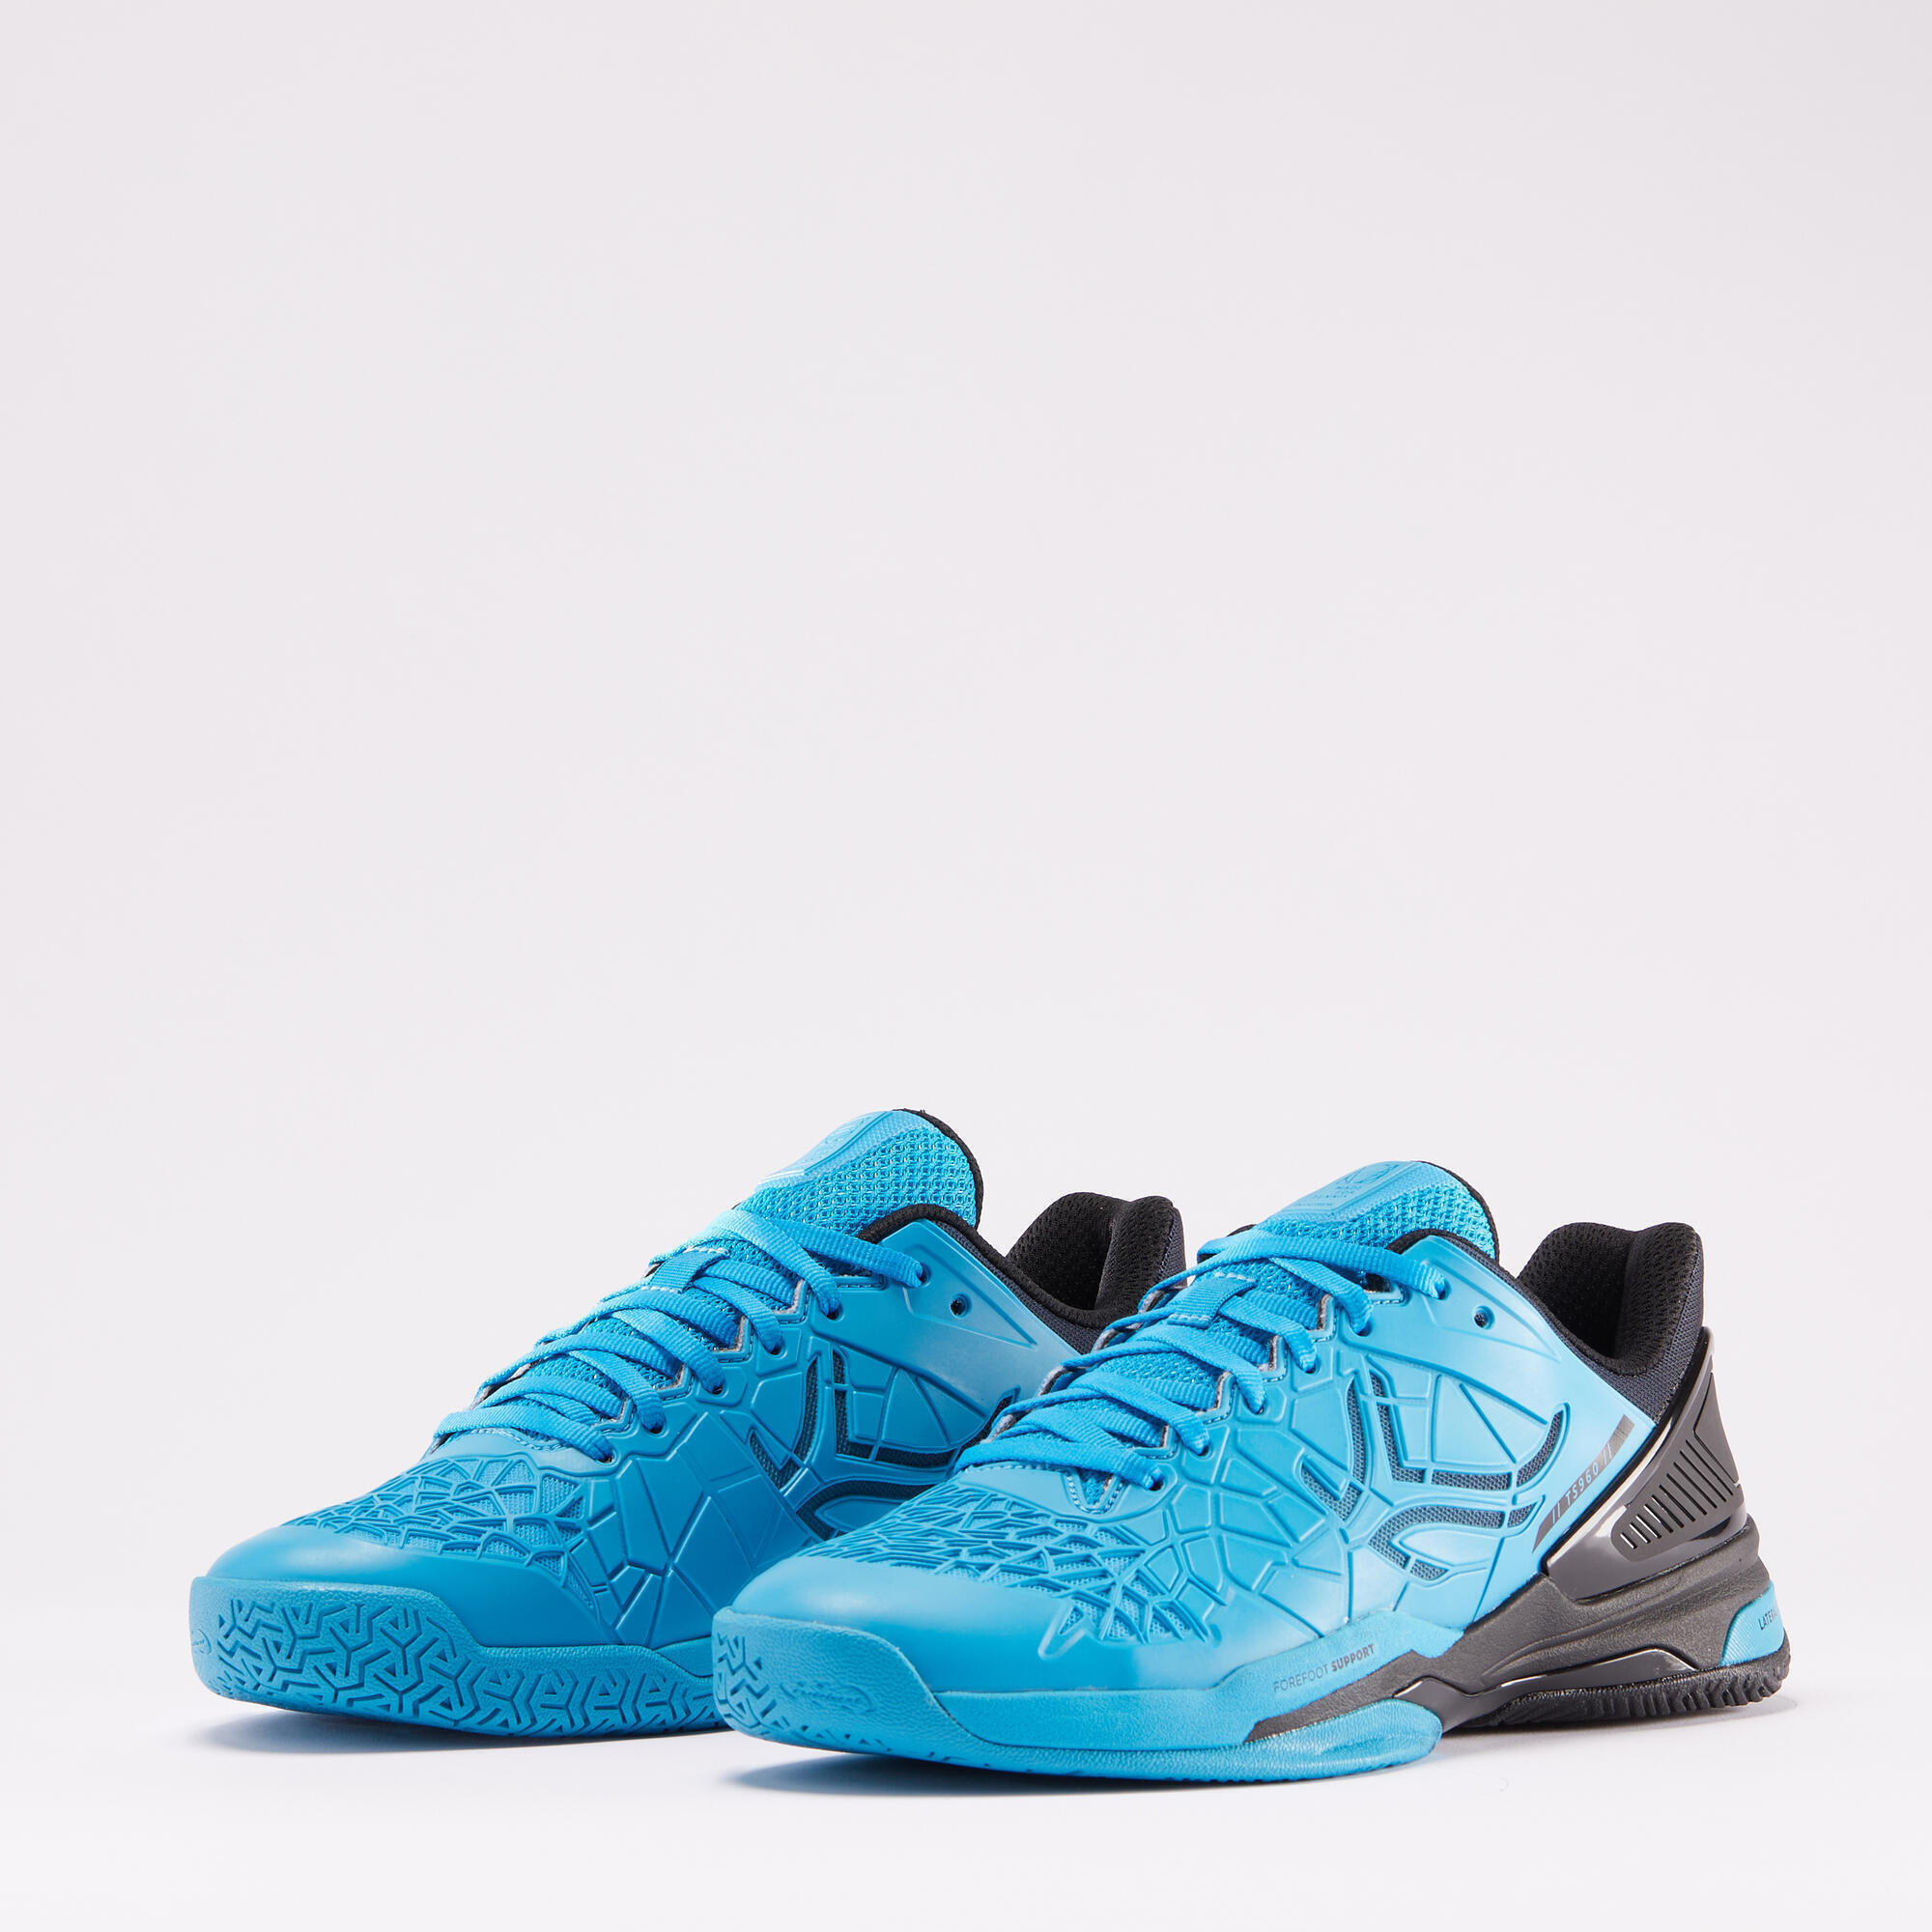 Men's Multicourt Tennis Shoes Strong Pro - Blue/Black 3/8